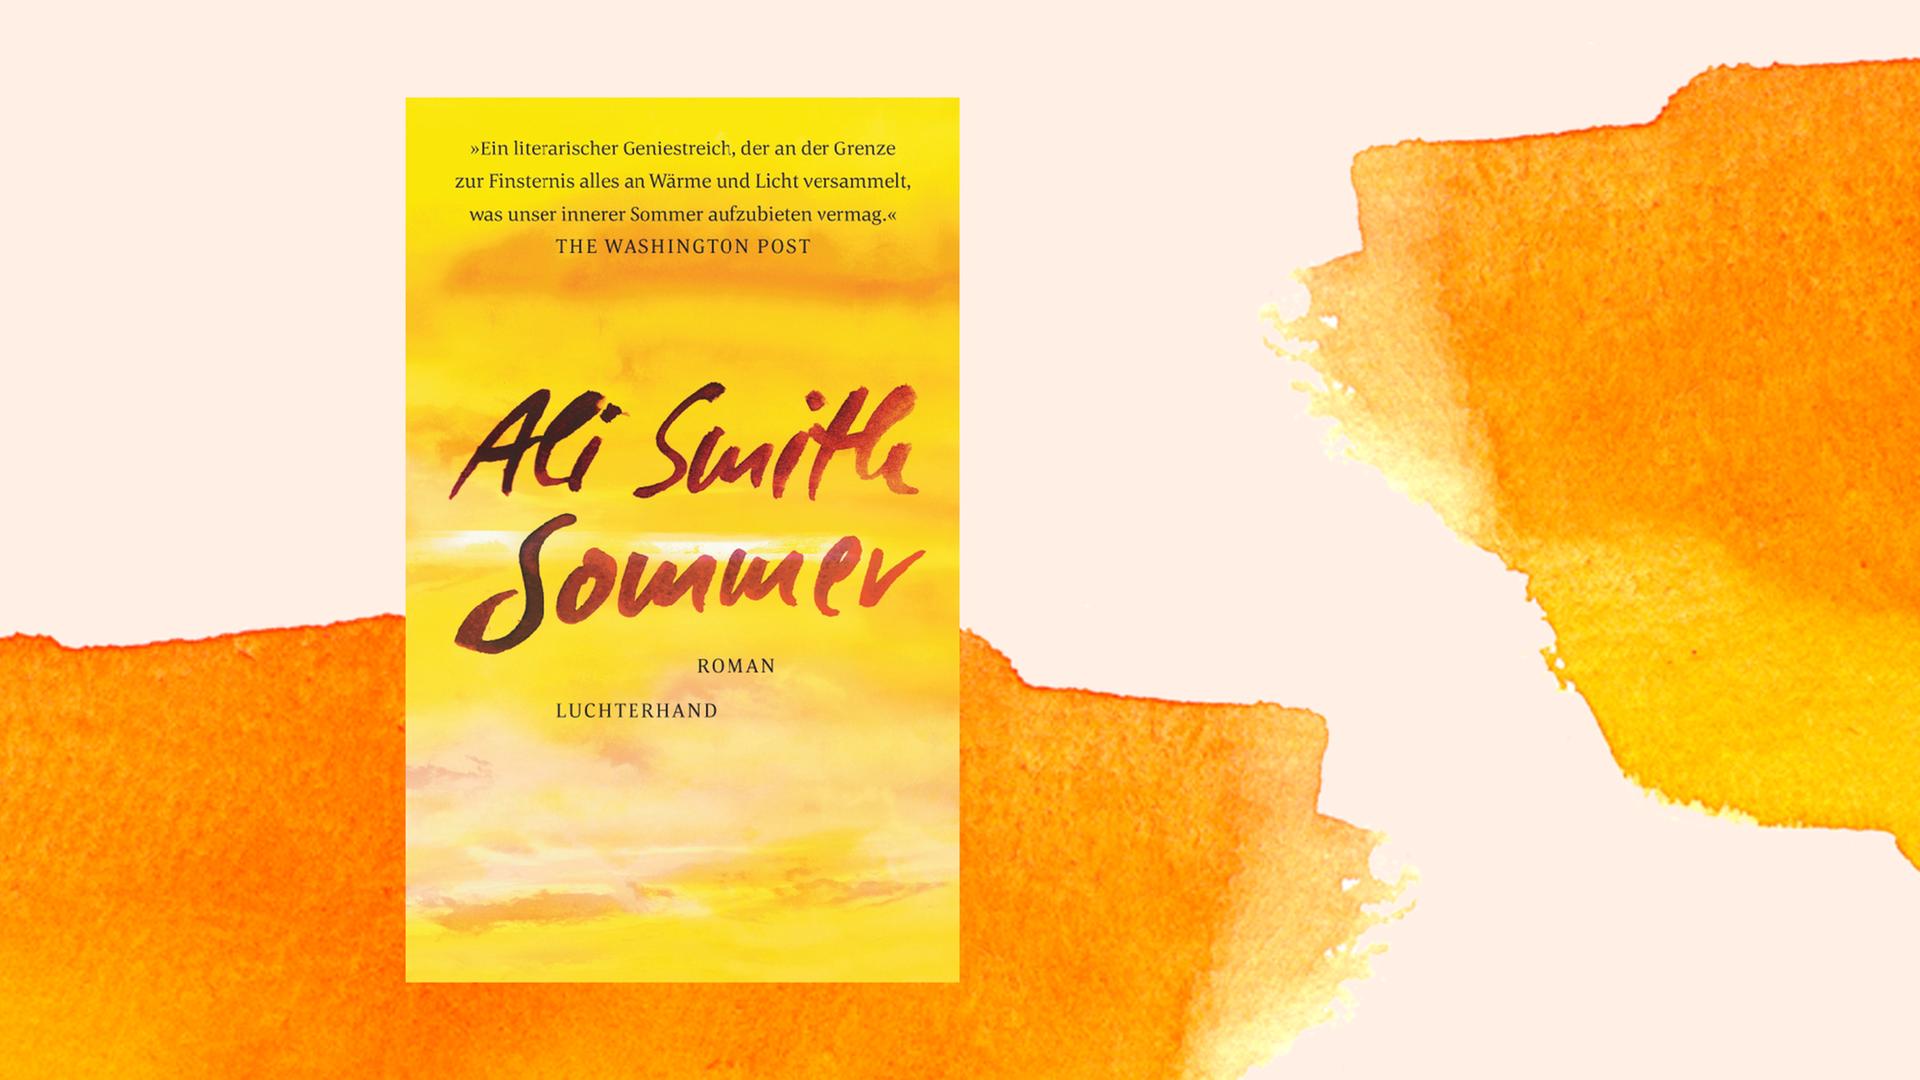 Das Cover zeigt eine Malerei mit einem Himmel in gelber, sommerlich-abendlicher Stimmung. Name der Autorin und Titel des Romans stehen in tiefroter Schreibschrift auf dem Bild.